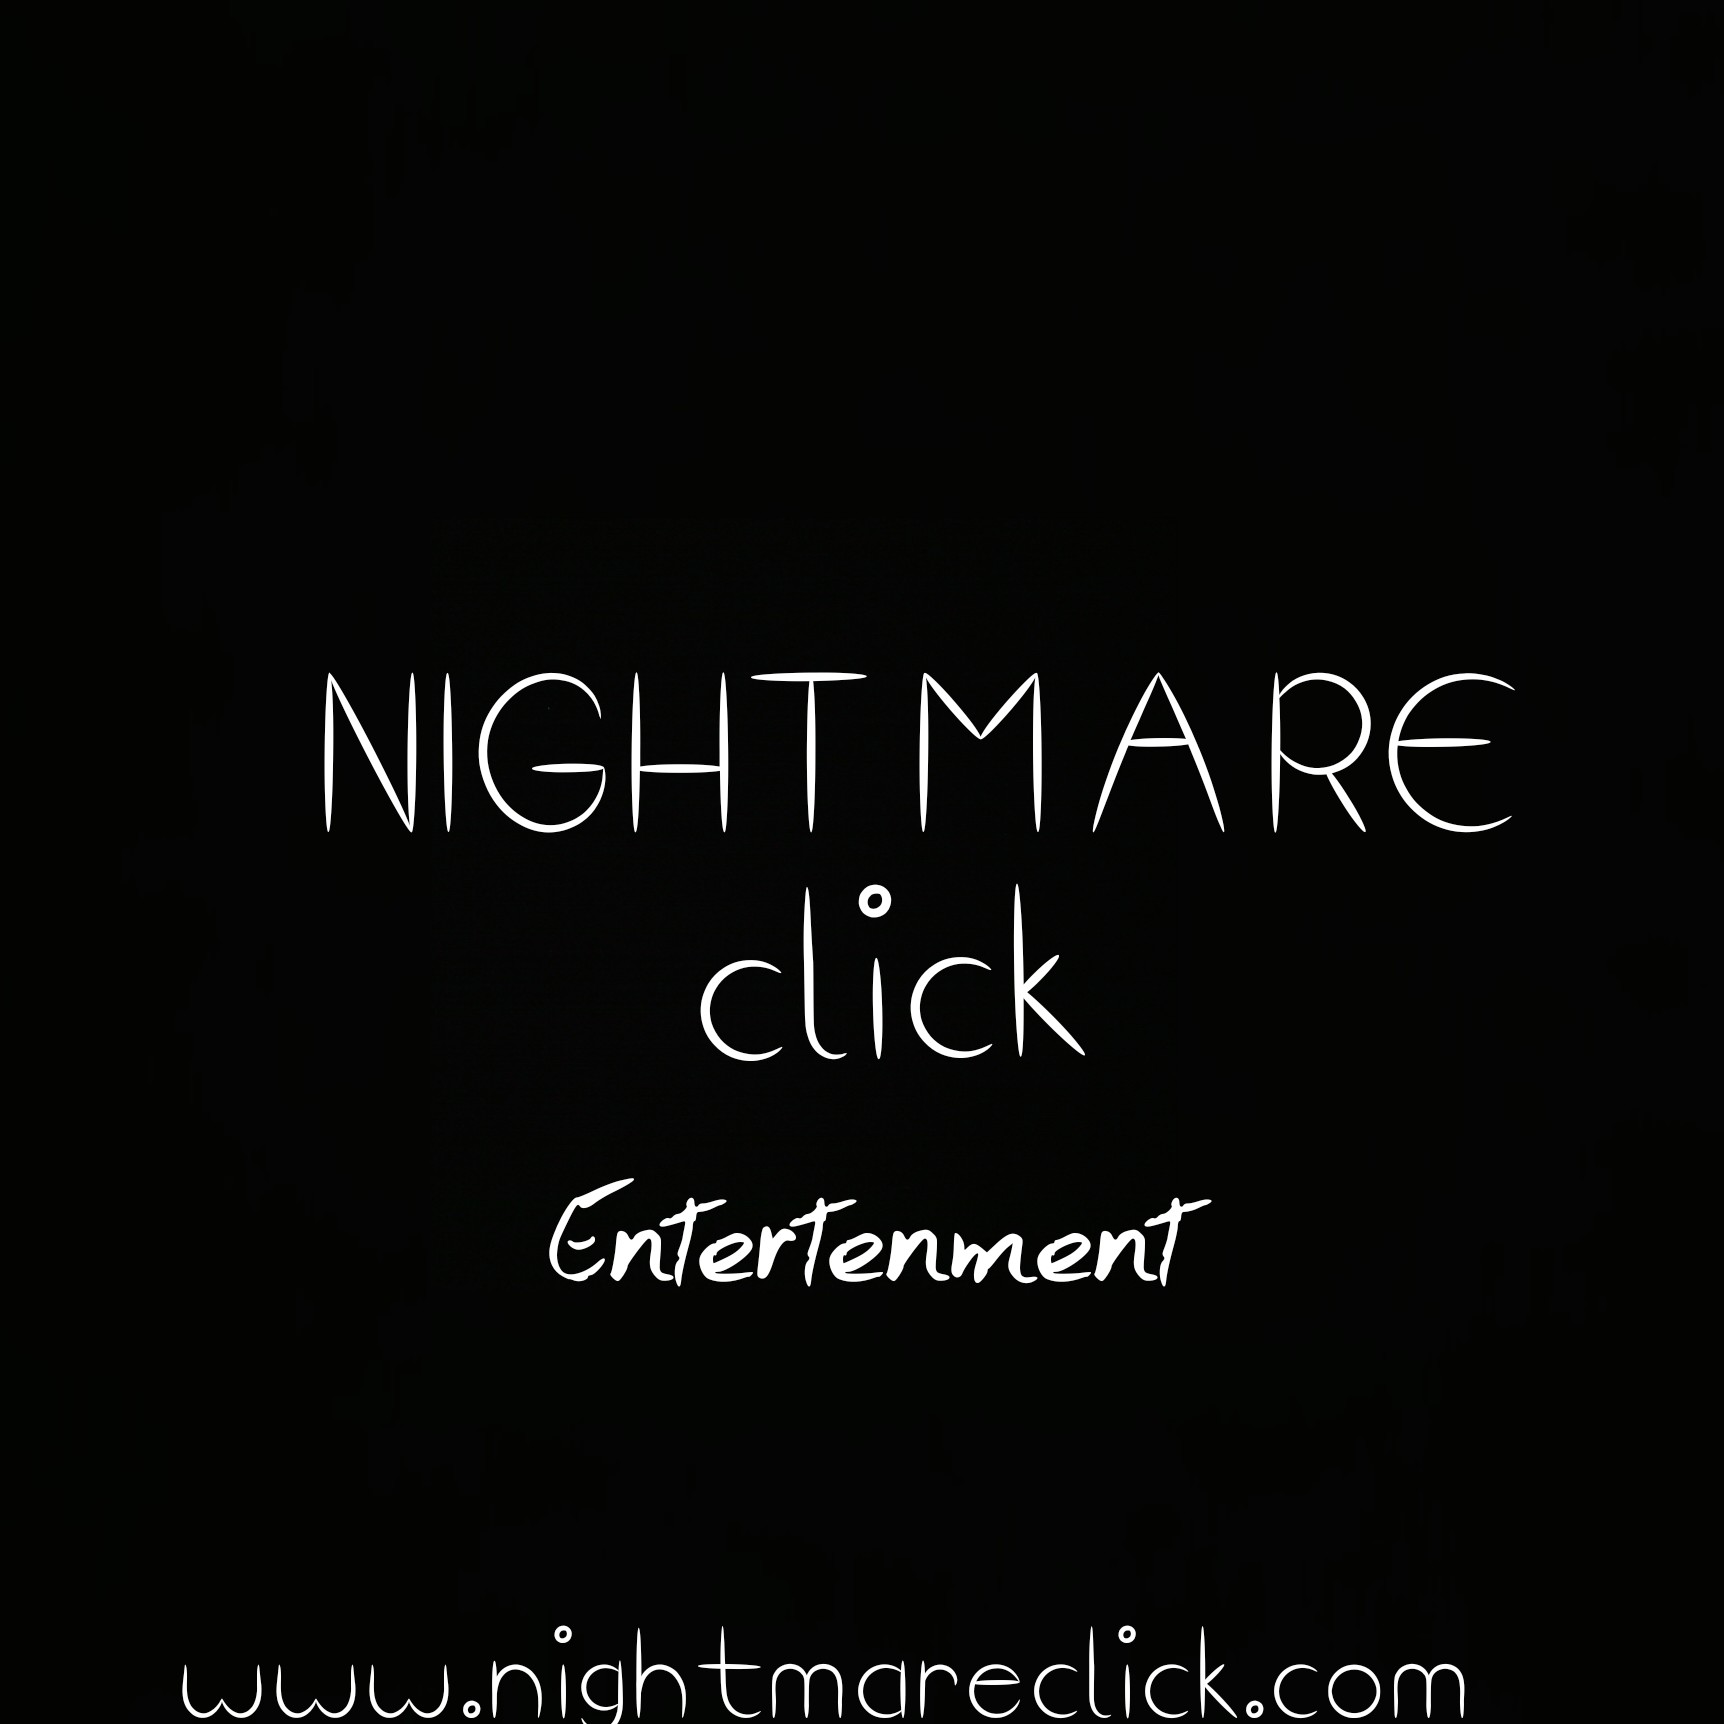 Night mare click